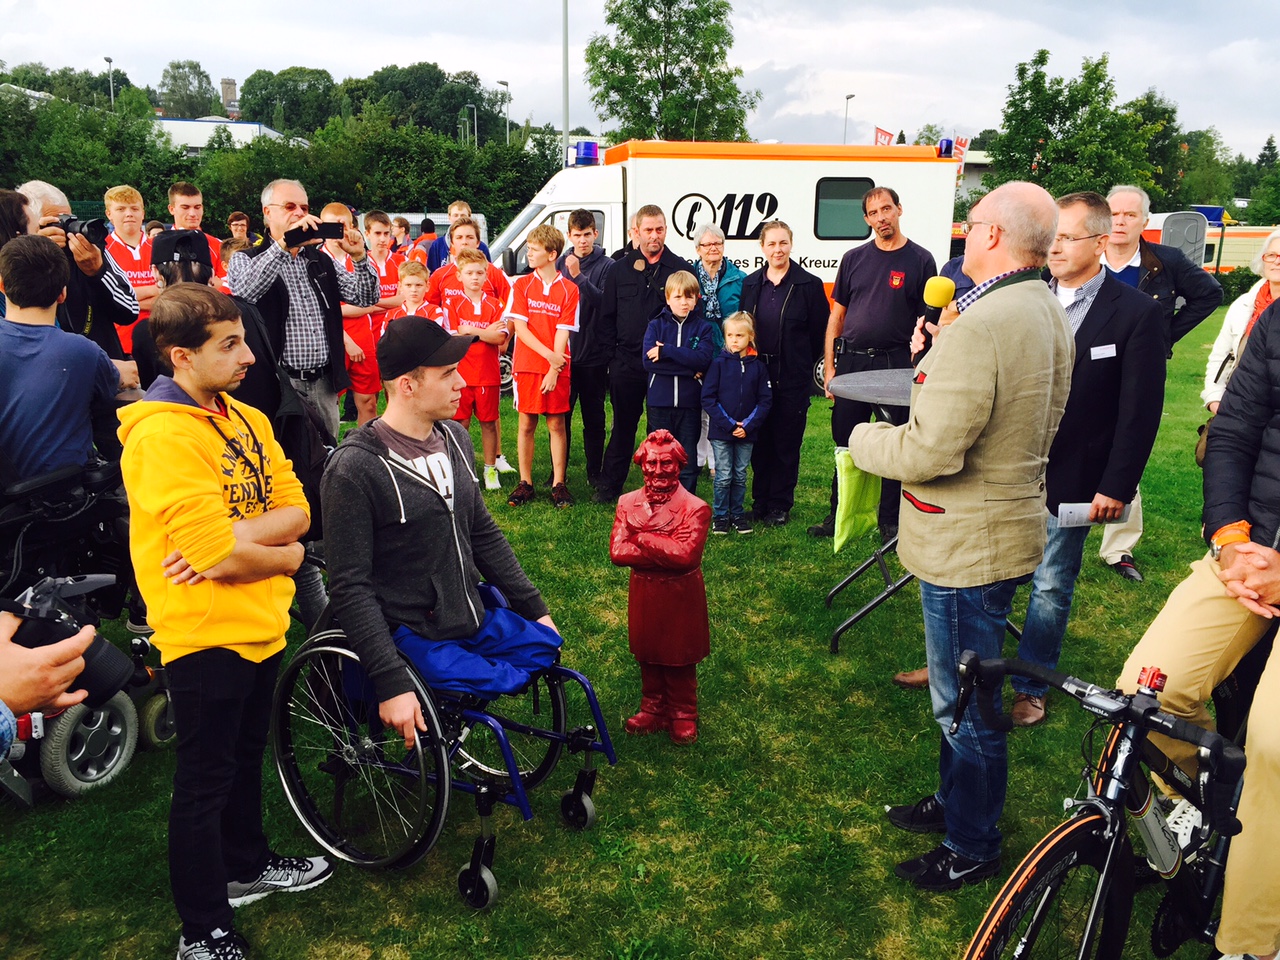 Begrüßung der Gäste und Teilnehmer des BBW-Fußballturniers durch Dr. Dr. Meinhard Esser vom Lions Club Wetter (Ruhr)